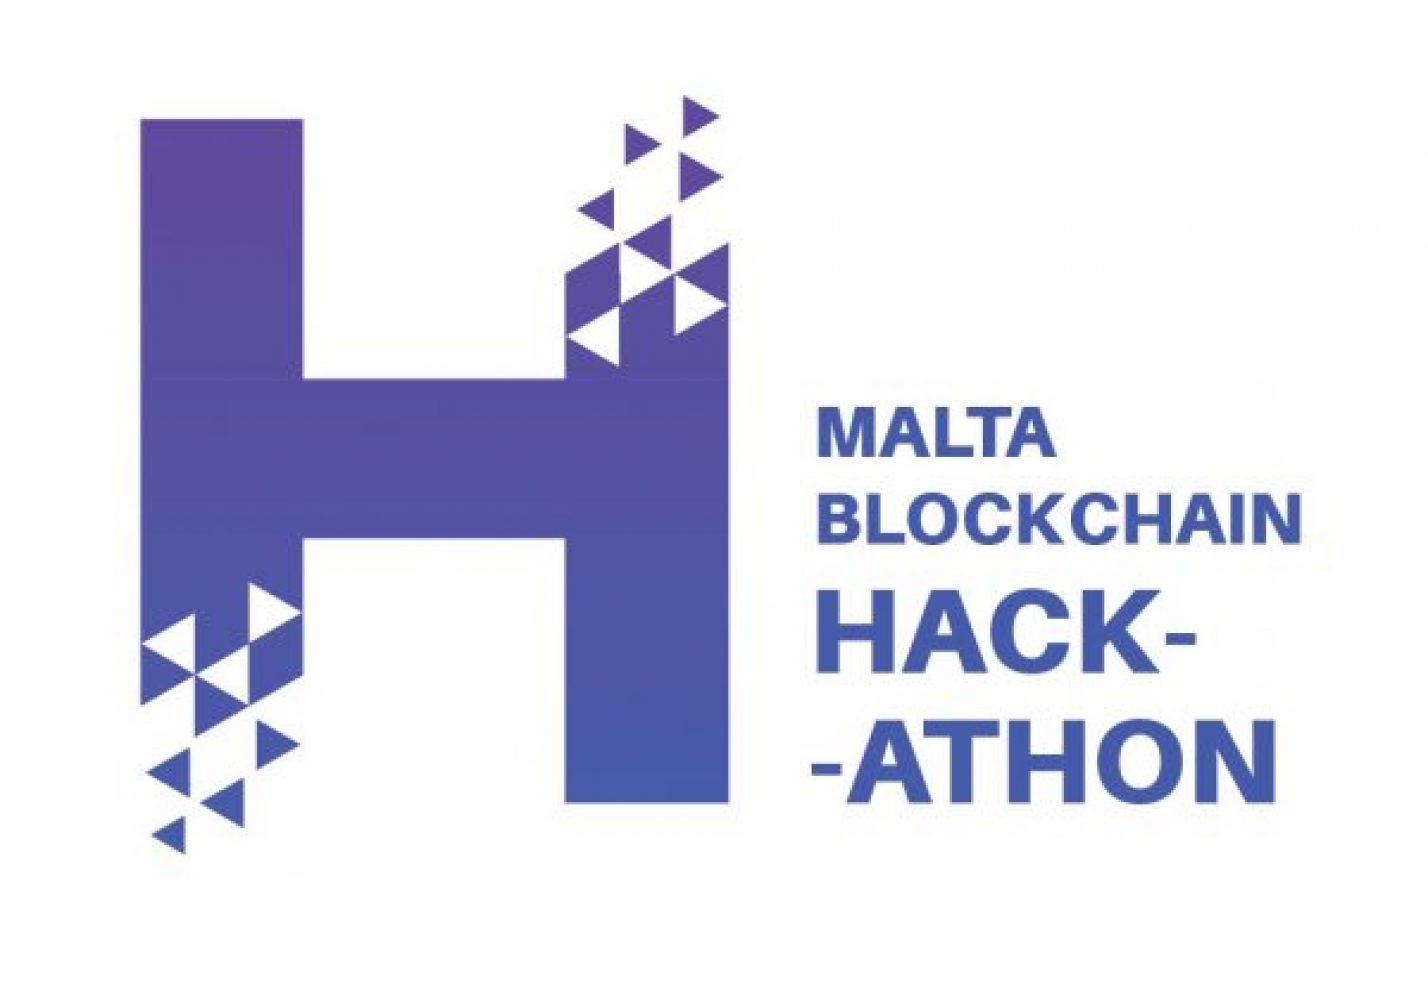 Join the Malta Blockchain Summit Hackathon